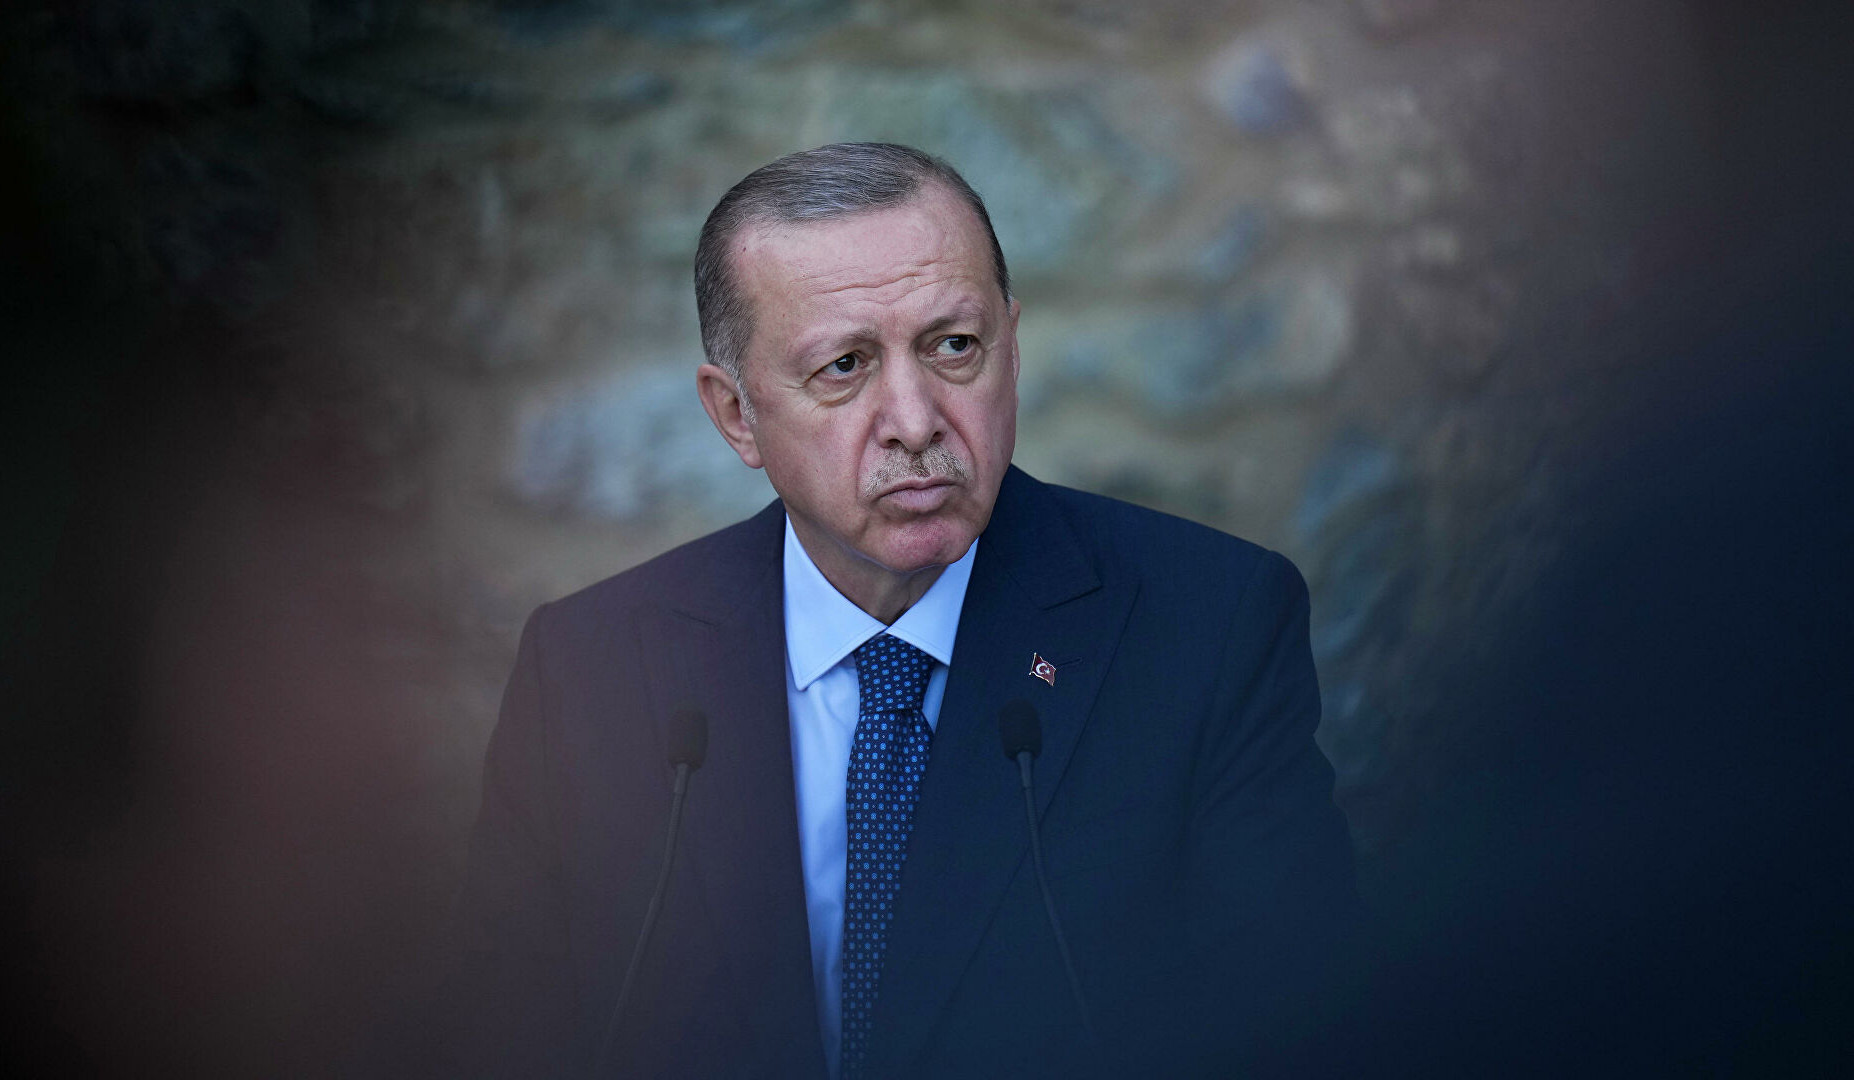 Թուրքիան ավարտին կհասցնի Սիրիայի հետ սահմանին անվտանգության գոտու ստեղծումը. Էրդողան